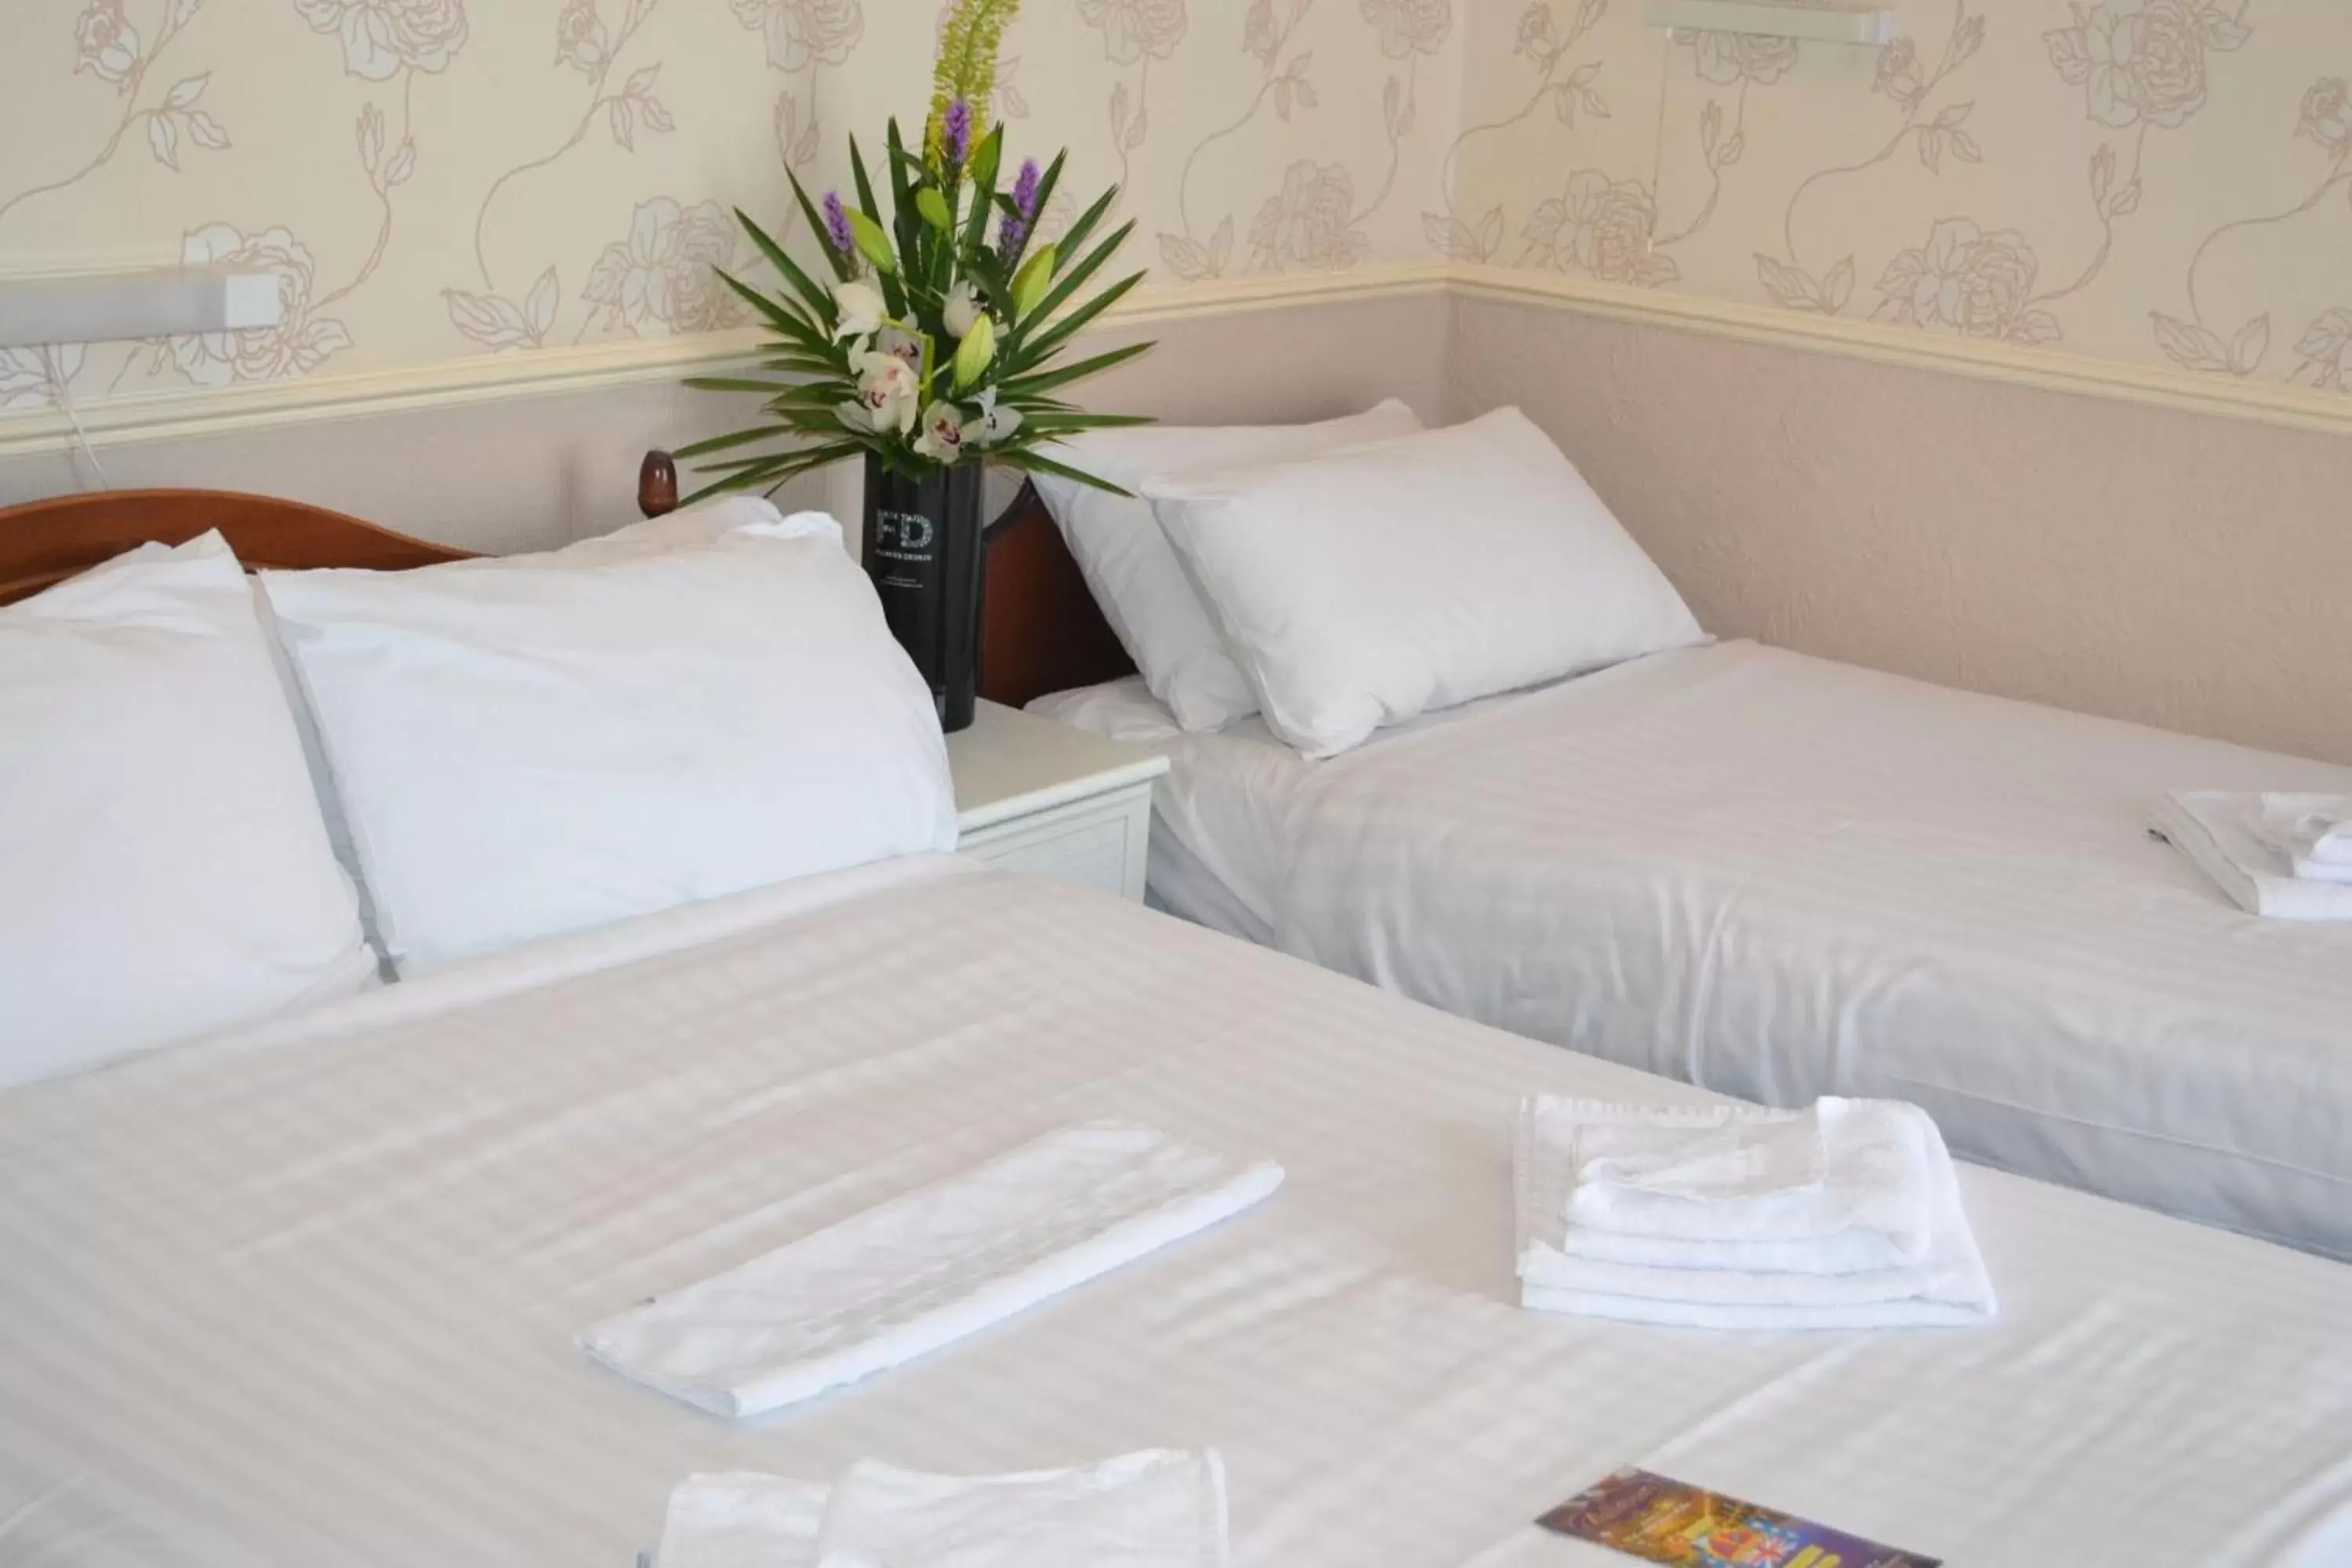 Bedroom, Bed in Lyndene Hotel